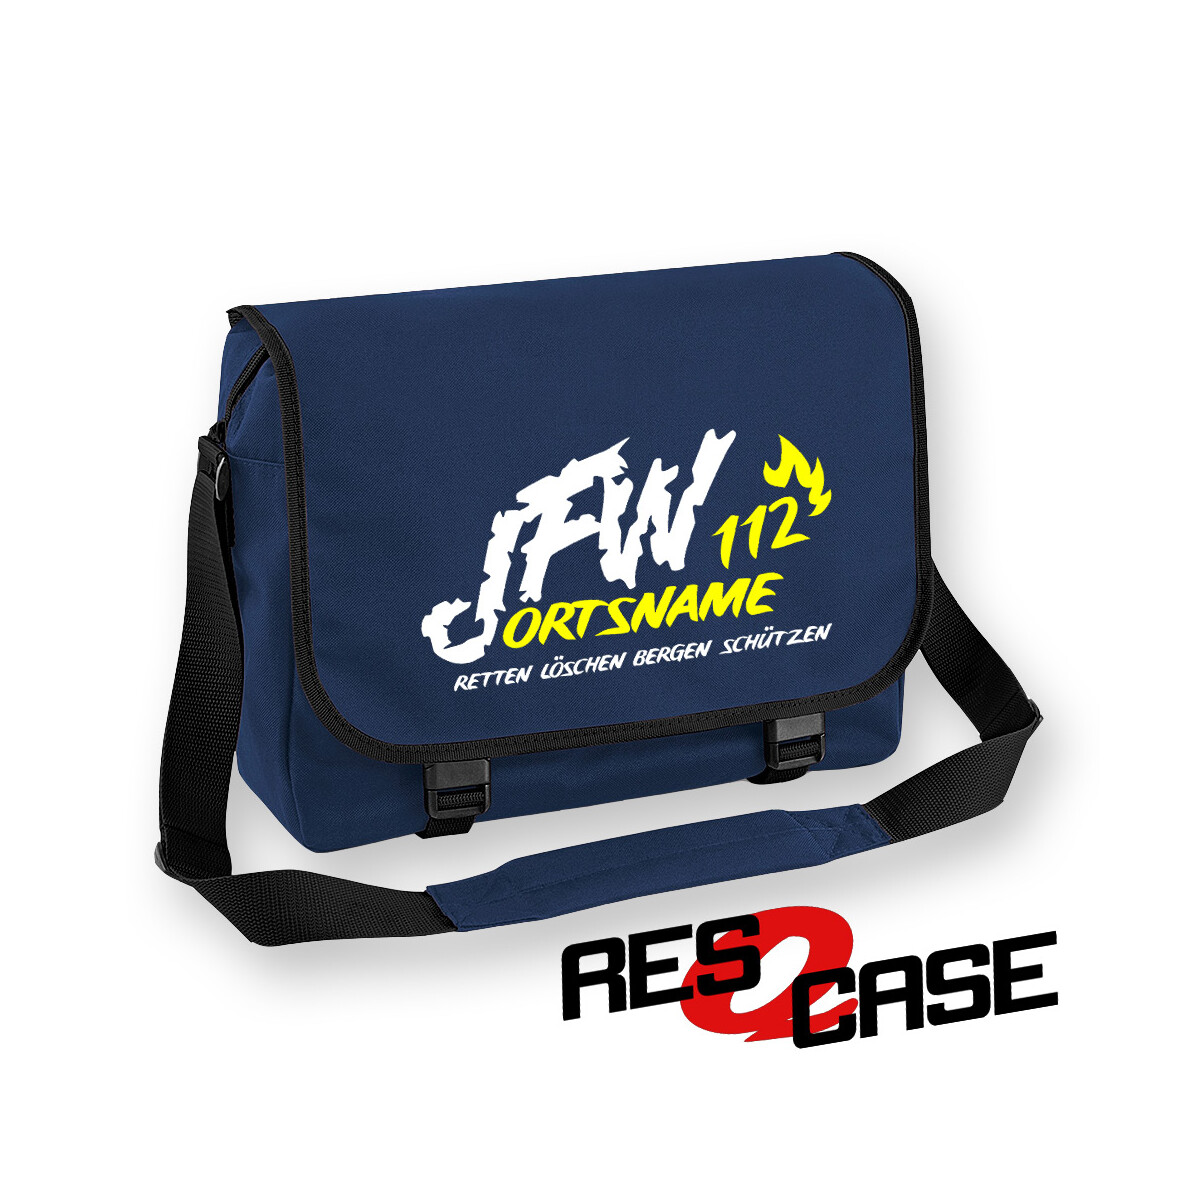 RESQCASE | Messenger-Tasche | Jugendfeuerwehr JFW 112...